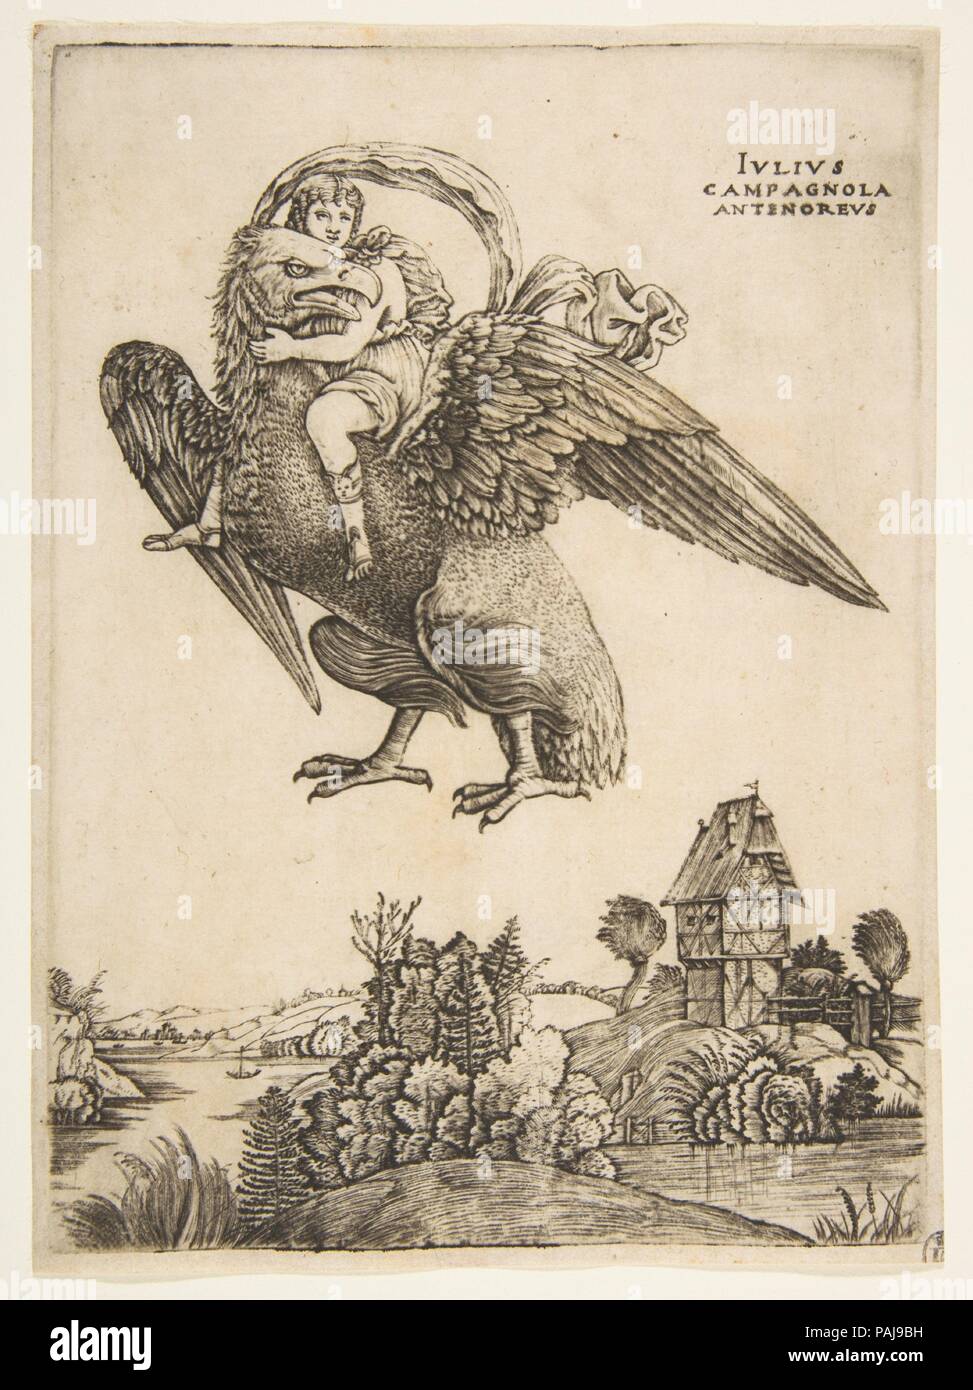 Ganymed als Junge Reiter ein grosser Adler (Zeus) im Flug über einer Landschaft. Artist: Giulio Campagnola (Italienisch, Padua Ca. 1482-ca. 1515/18 Venedig); ? Nach Andrea Mantegna (Italienisch, Isola di Carturo 1430/31-1506 Mantua). Maße: Blatt: 6 7/8 x 5 1/16 in. (17,5 × 12,8 cm) Platte: 6 5/8 x 4 13/16 in. (16,9 × 12,2 cm). Datum: Ca. 1500-1505. Die extreme Jugend der Junge dargestellt von Campagnola, zusammen mit seinem bereit, Teilnahme an seiner Entführung von Jupiter in der Gestalt eines Adlers, schlägt vor, dass ein Neuplatonischen Lesung des Mythos bestimmt sein können. Beginnend mit der moralized Versionen von Stockfoto